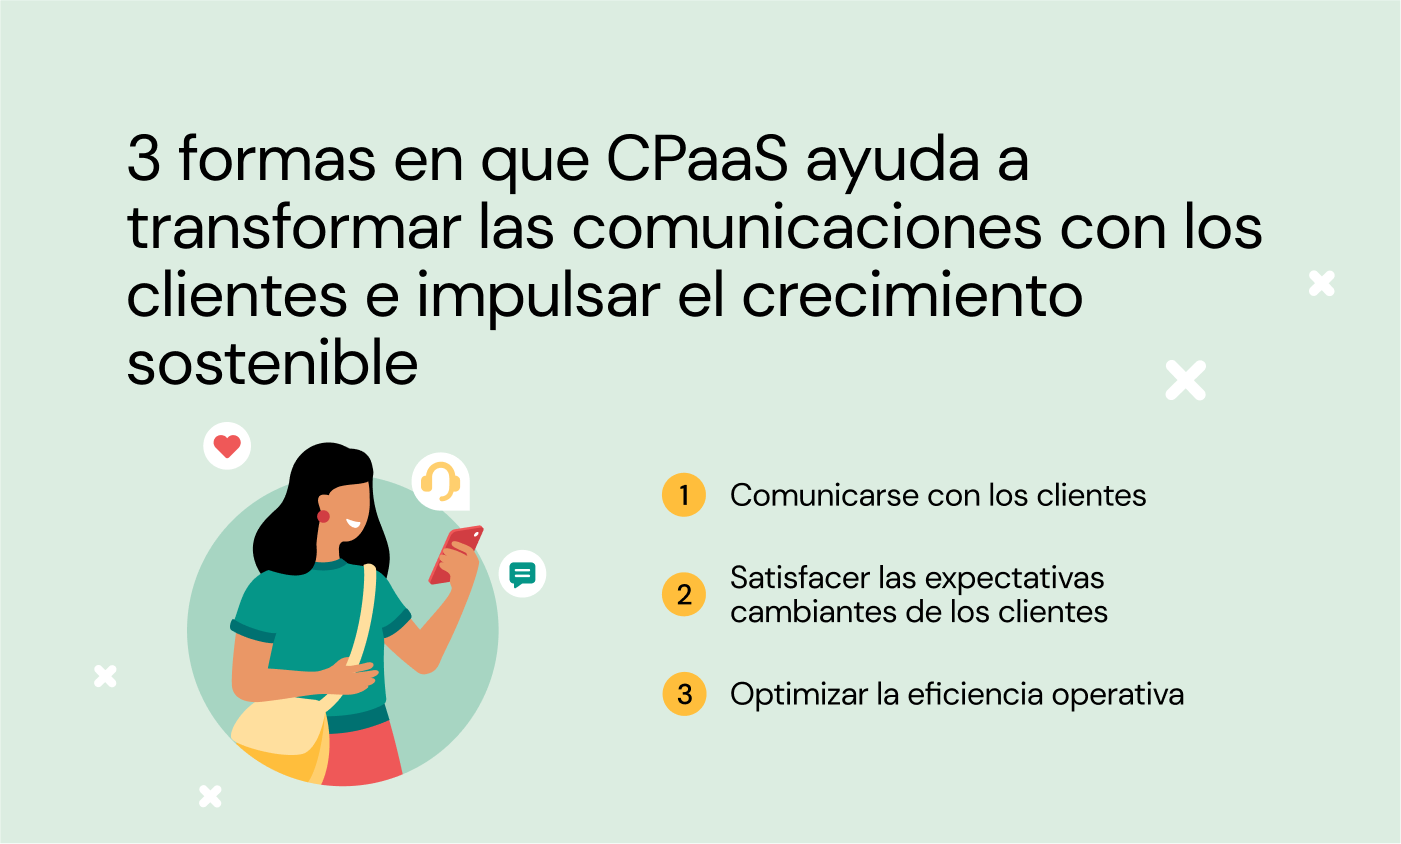 Image que muestra las 3 formas en que CPaaS ayuda a transformar las comunicaciones y el crecimiento.